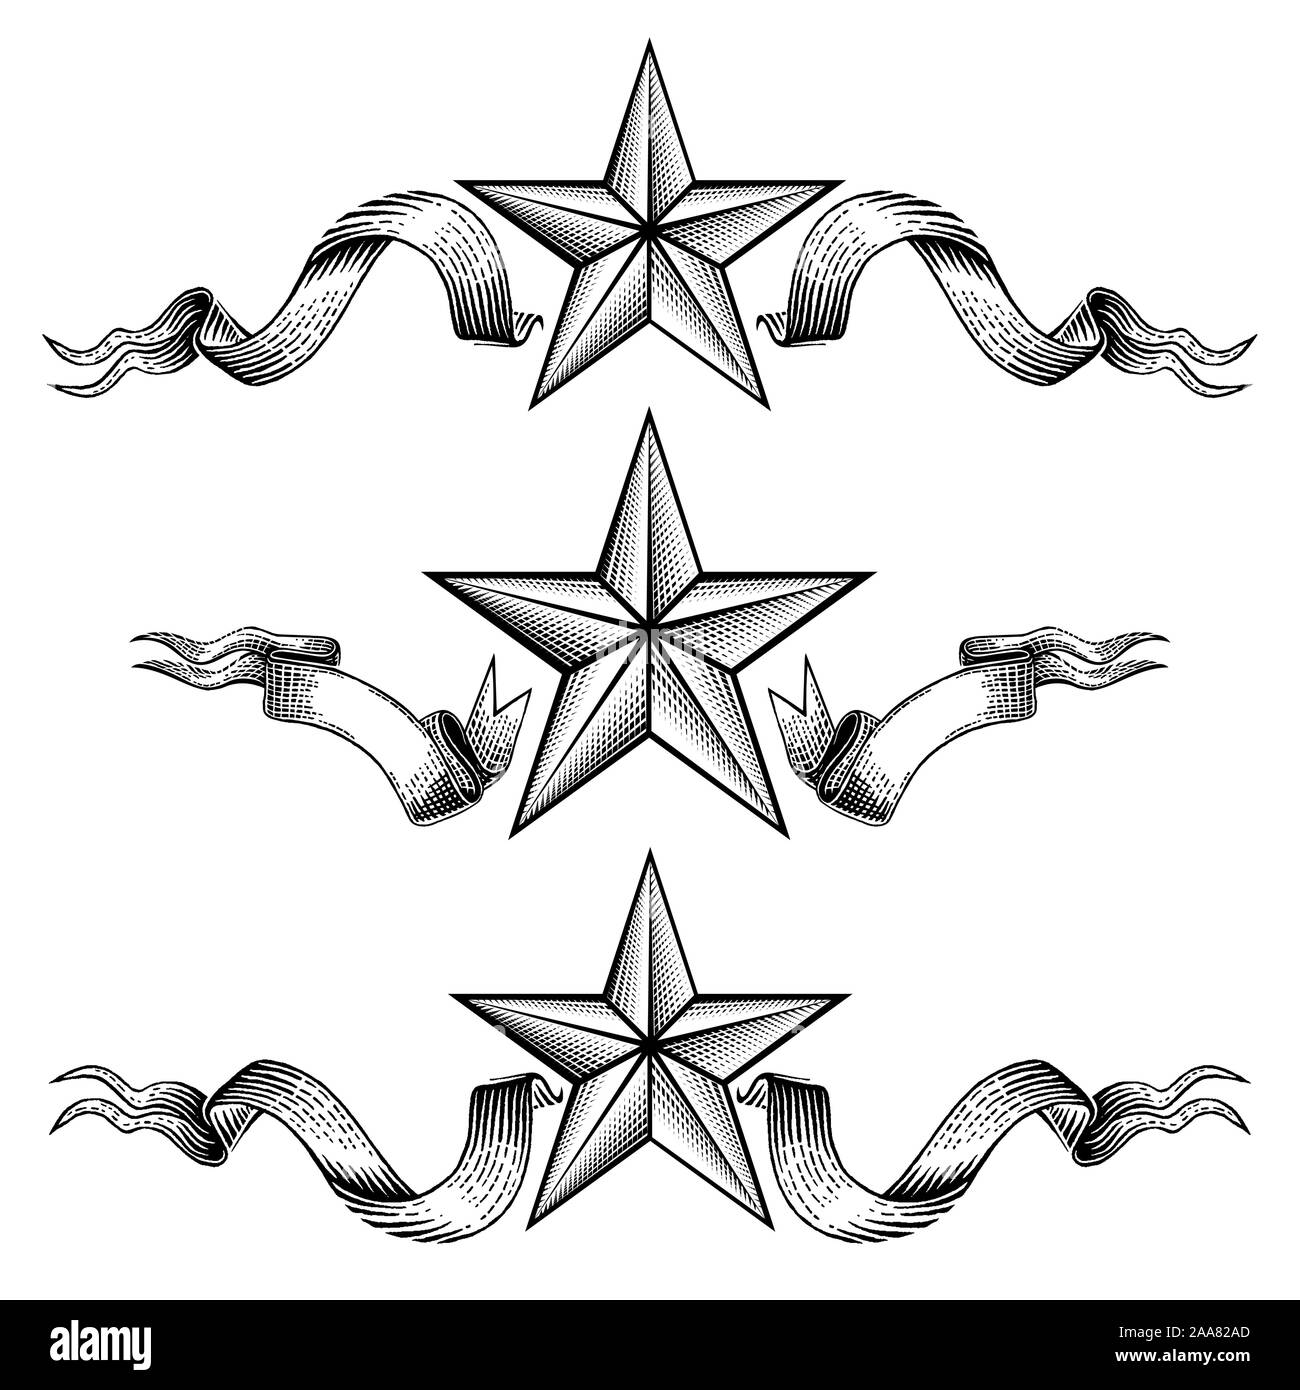 Drei verschiedene Banner mit Stern in der Mitte der Bänder isoliert auf Weiss. Vintage Gravur Stil für Print- oder Design Stock Vektor